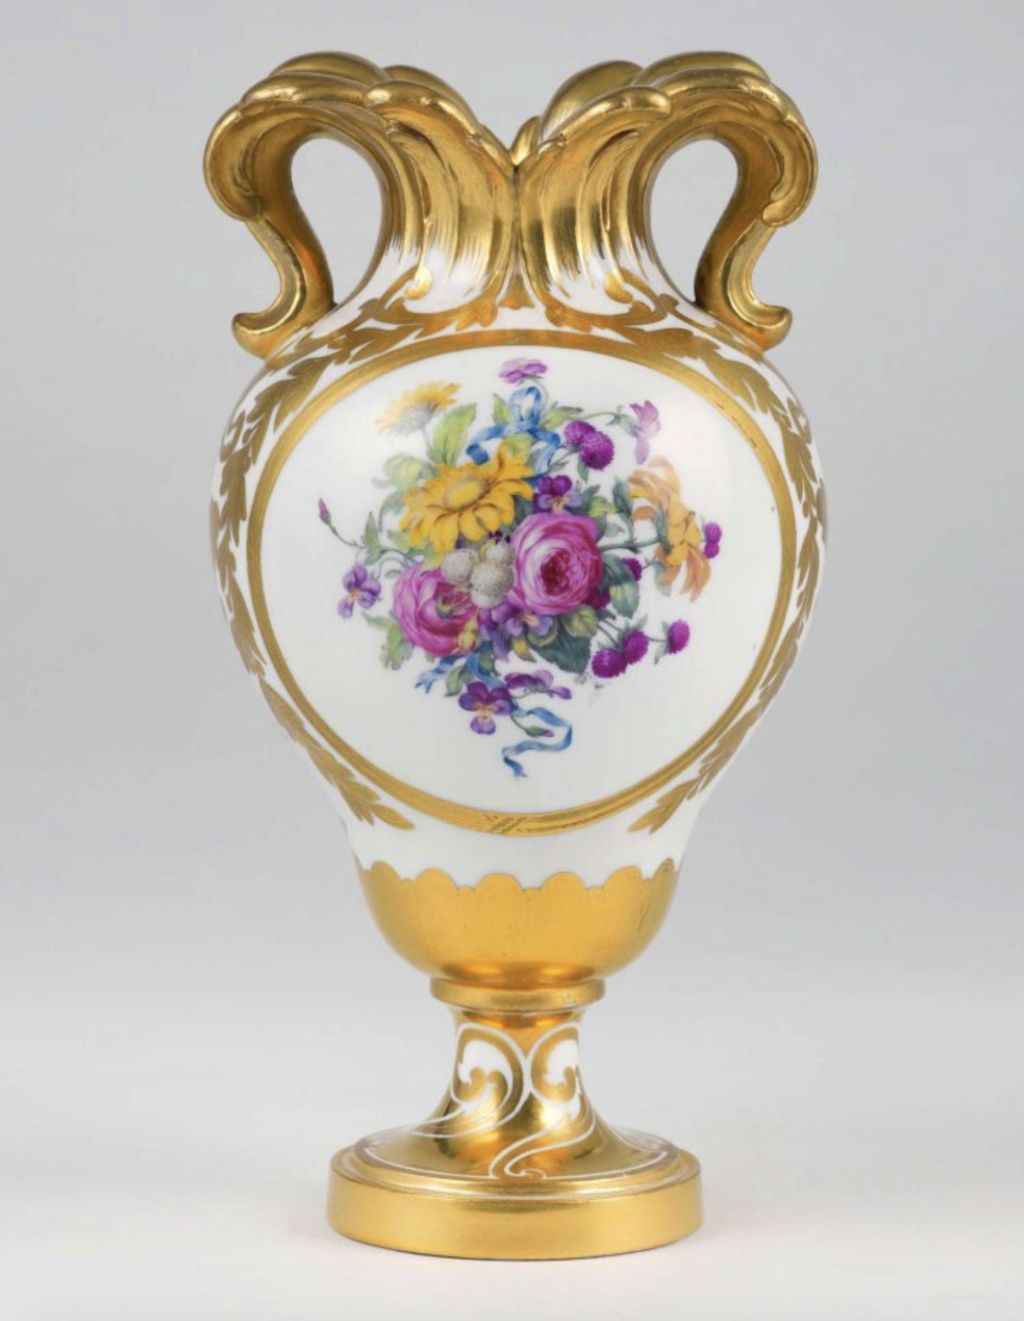 Le premier vase en porcelaine de Sèvres acheté par Marie-Antoinette en 1774 Capt3352